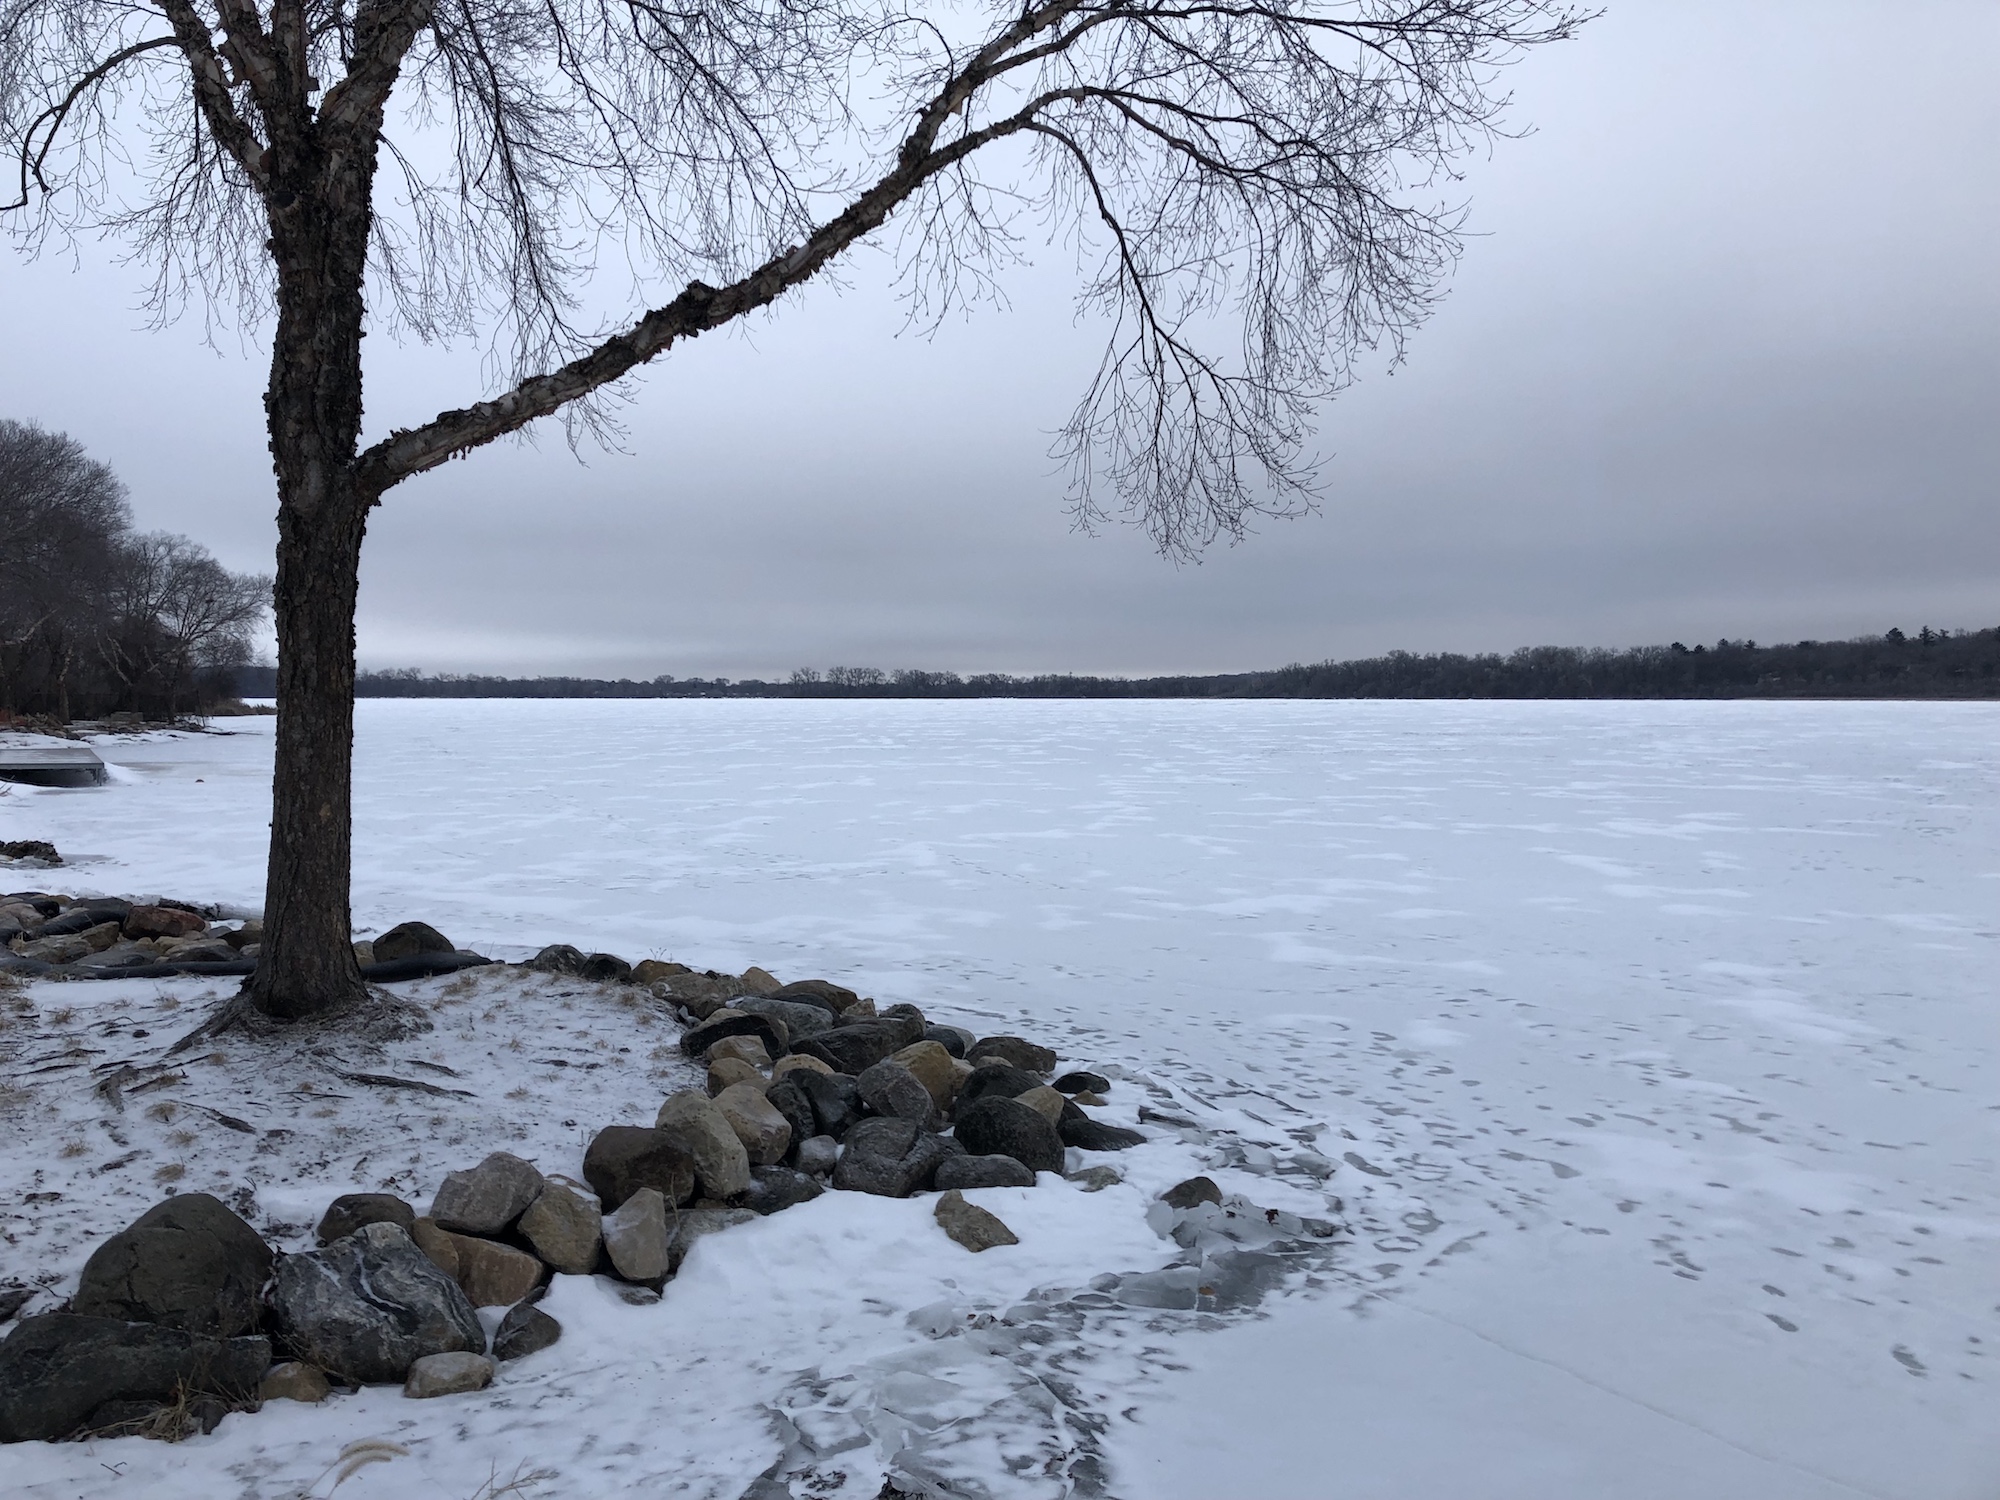 Lake Wingra on February 6, 2019.